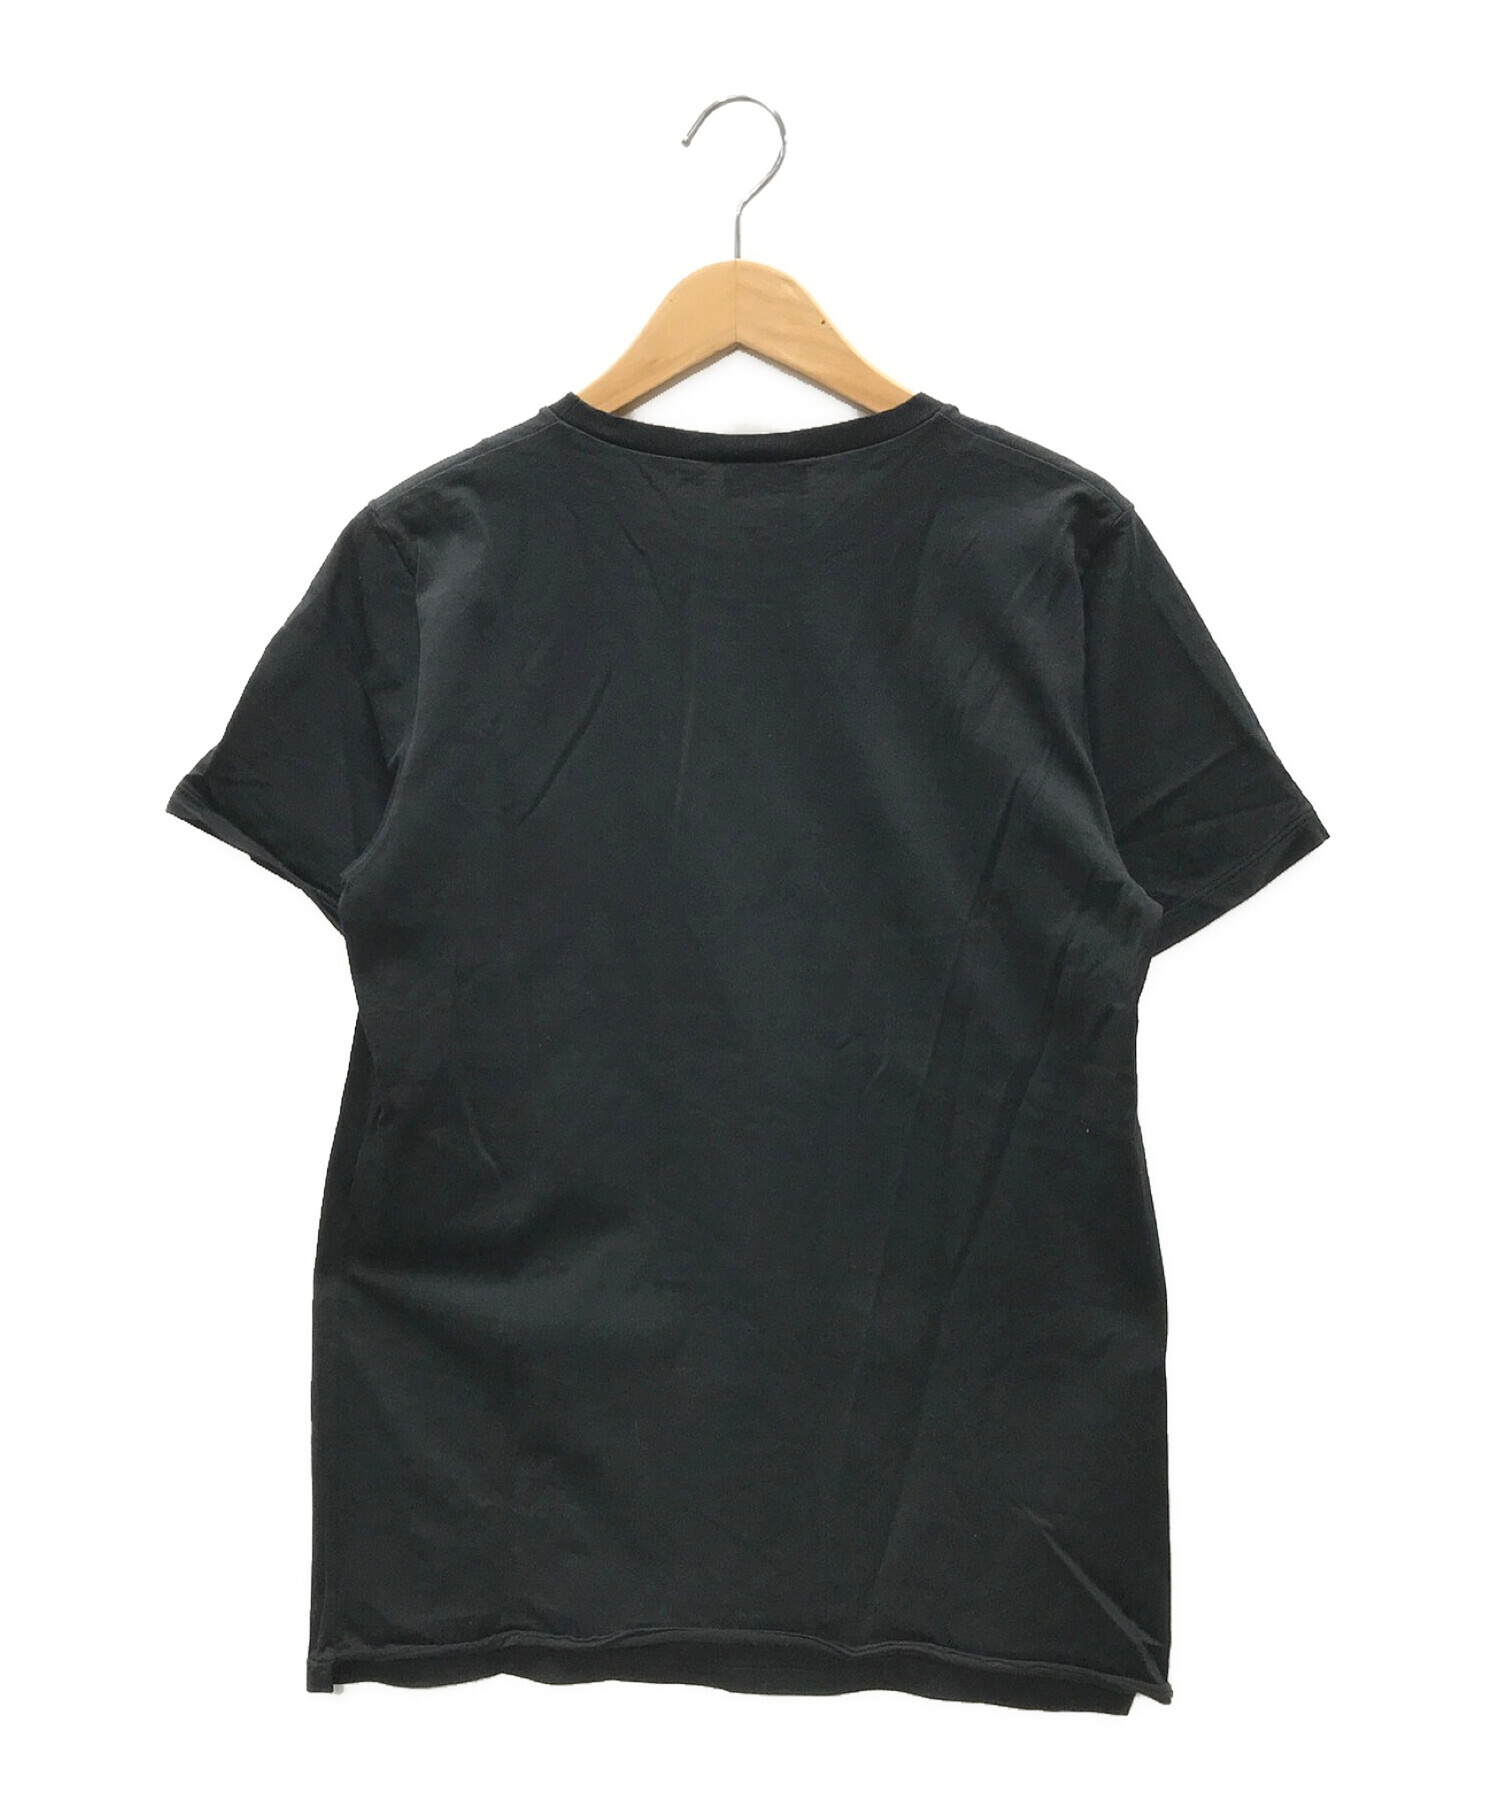 Saint Laurent Paris (サンローランパリ) Tシャツ/半袖カットソー ブラック サイズ:XS